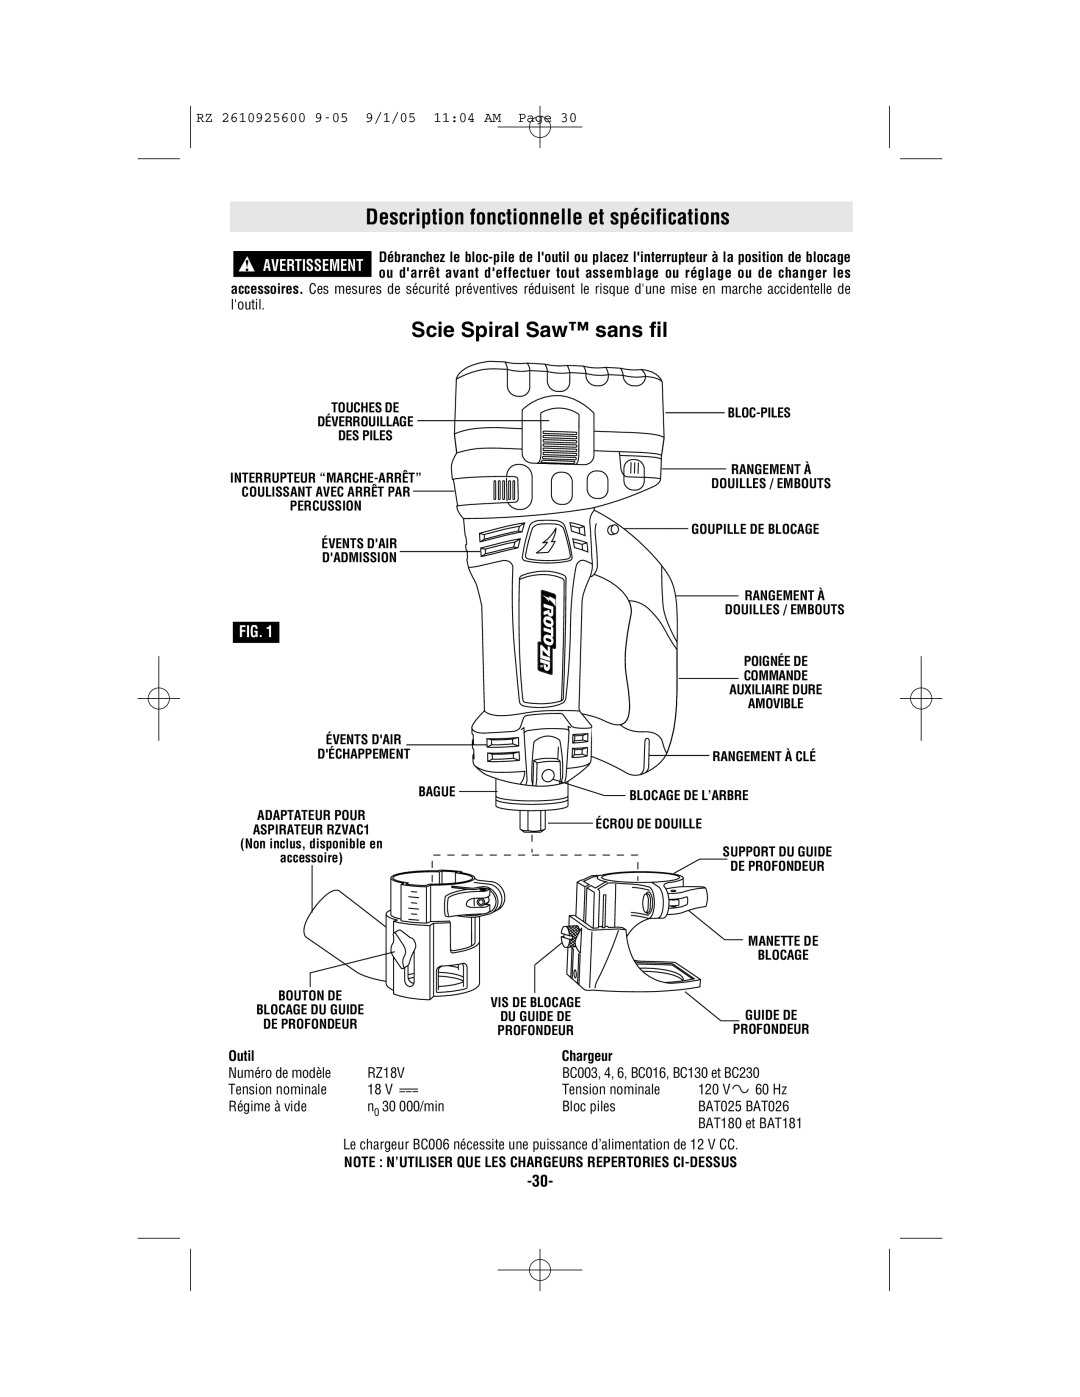 Bosch Power Tools ROTOZIP RZ18V Description fonctionnelle et spécifications, Scie Spiral Saw sans fil, Outil Chargeur 